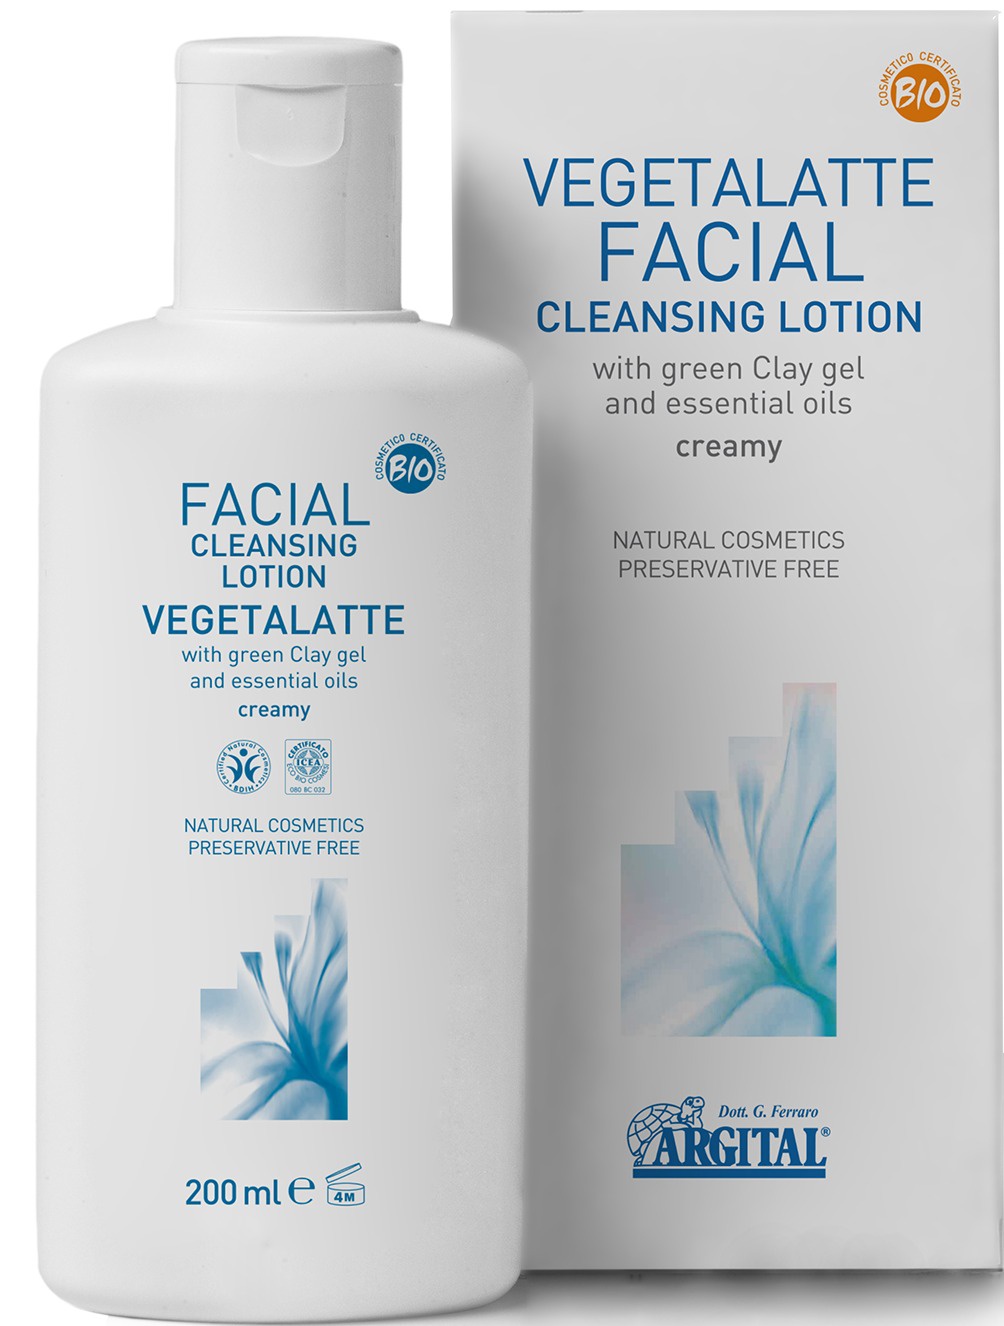 Argital Vegetalatte Facial Cleansing Lotion